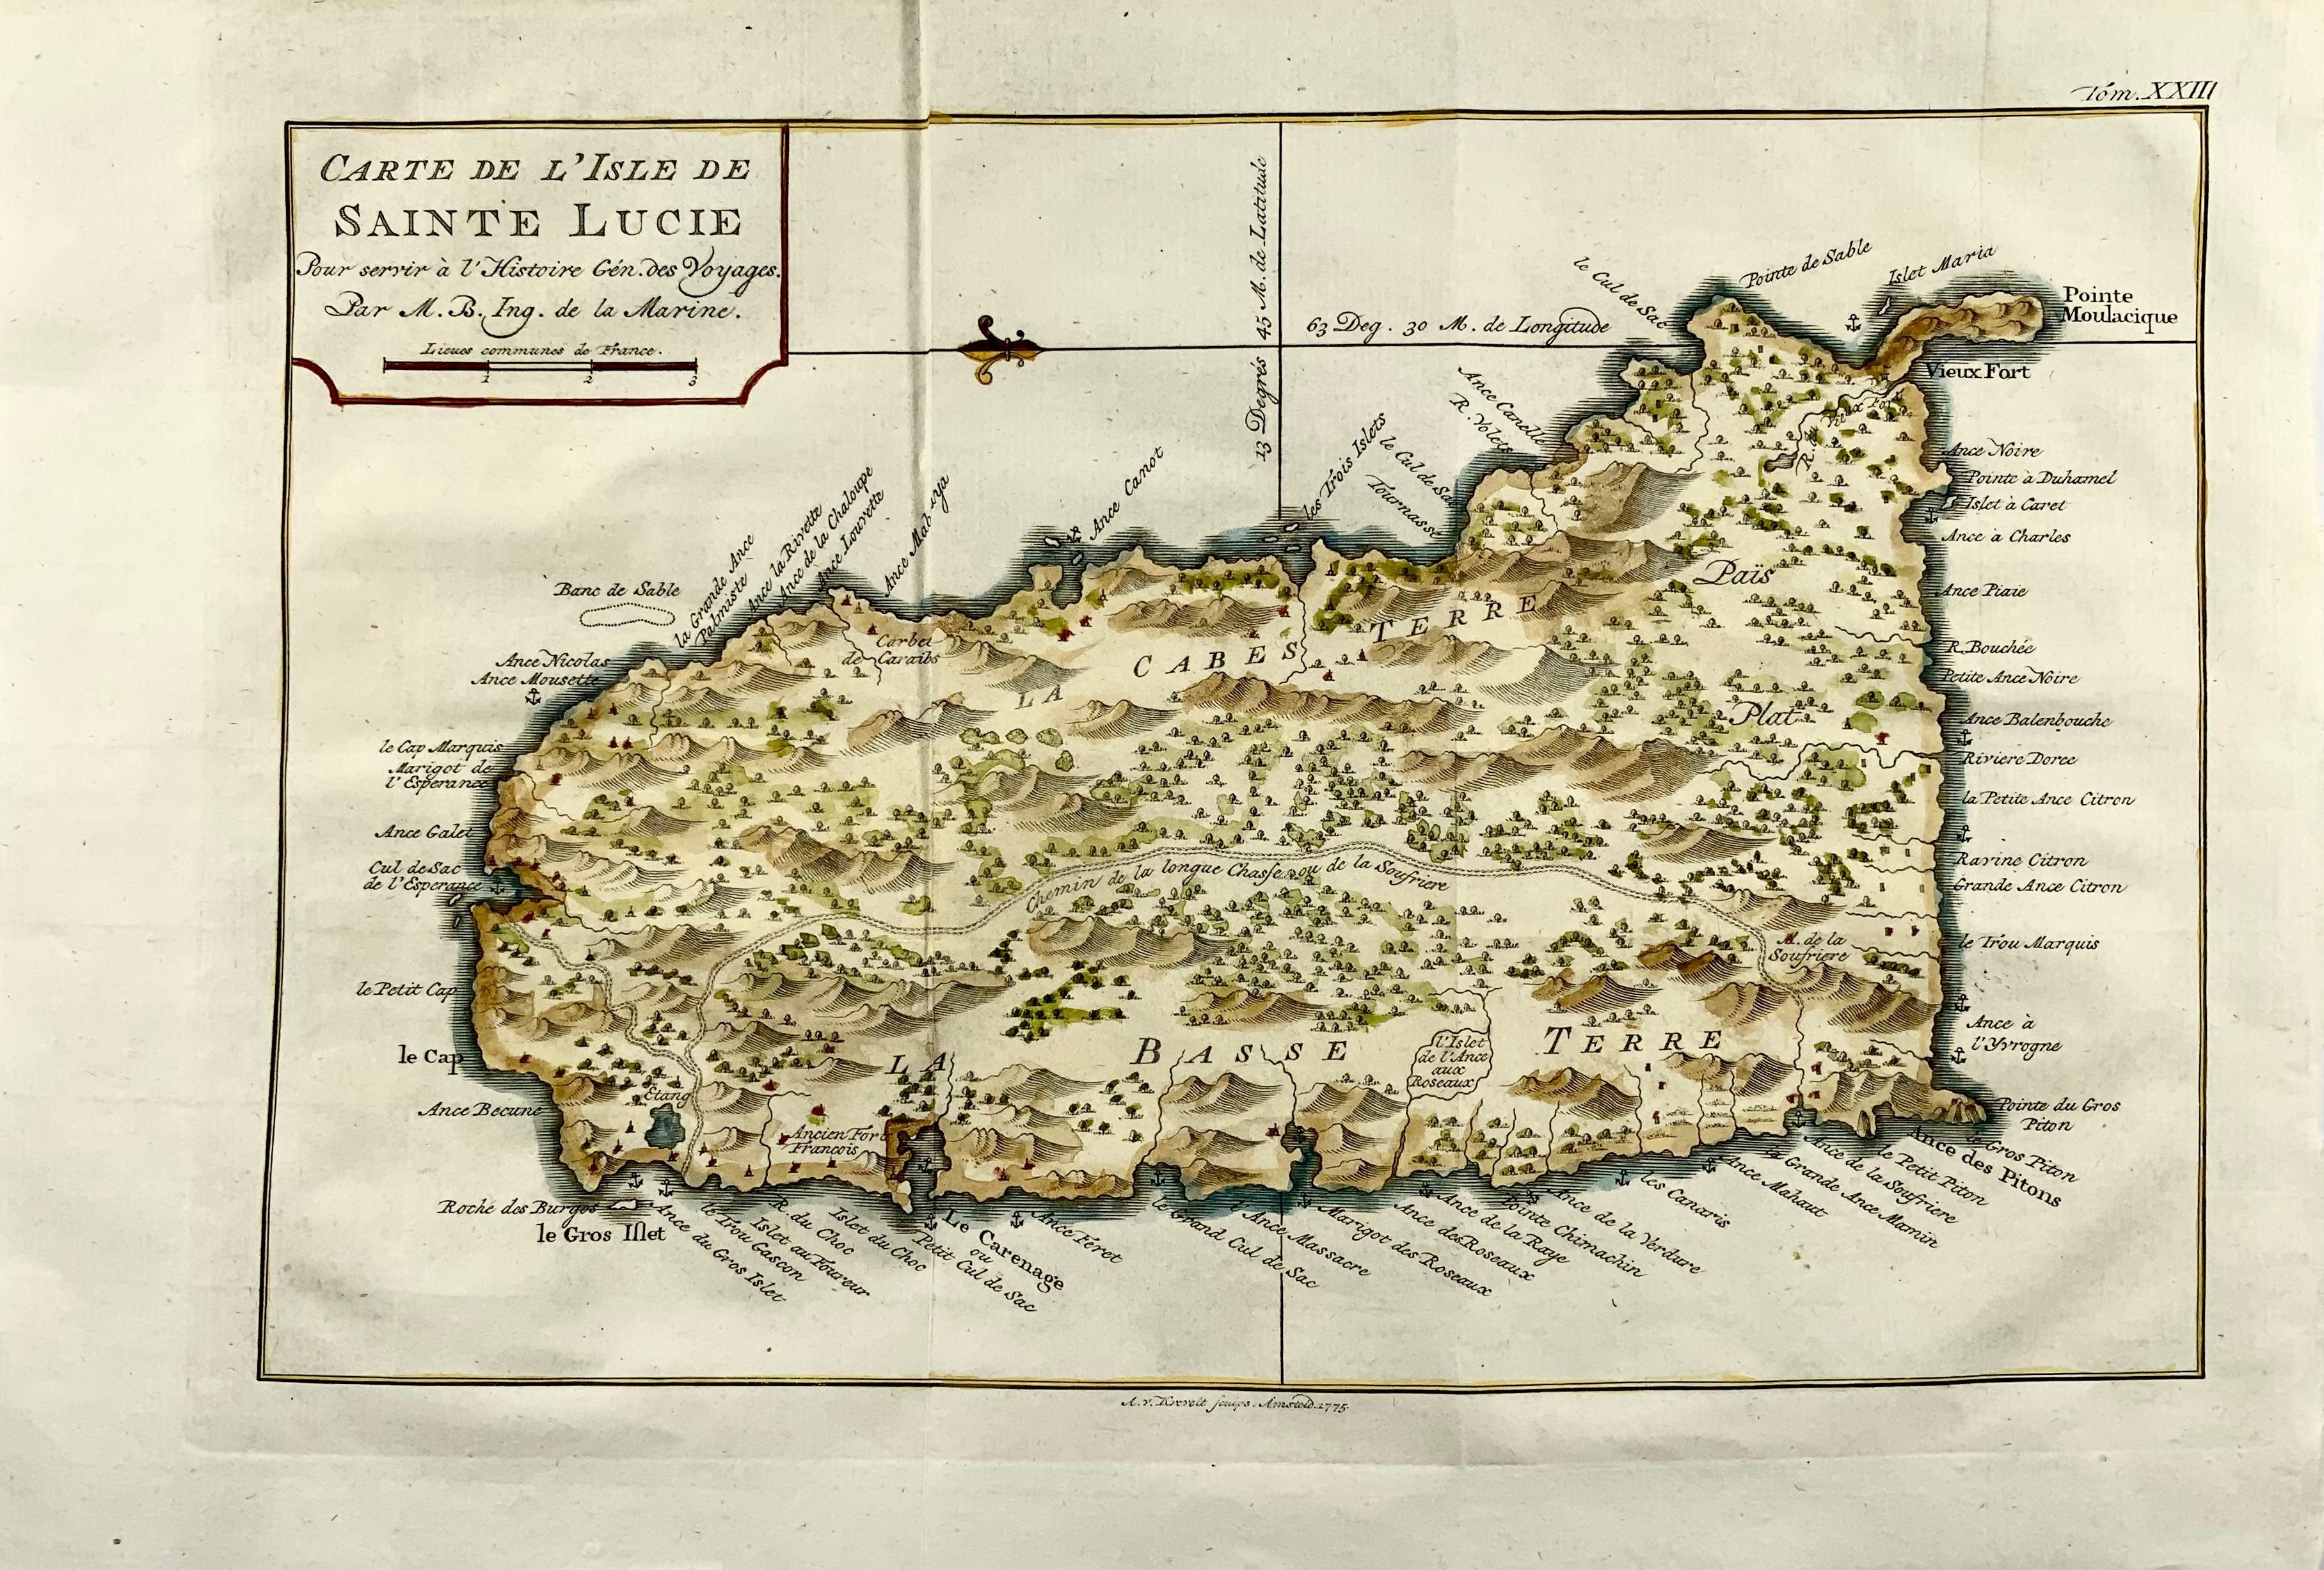 Carte De L'Isle De Sainte Lucie

Detaillierte Kupferstichkarte von Saint Lucia von Jacques Nicolas Bellin.

Diese Karte wurde von Krevely 1775 für die seltene niederländische Ausgabe der 